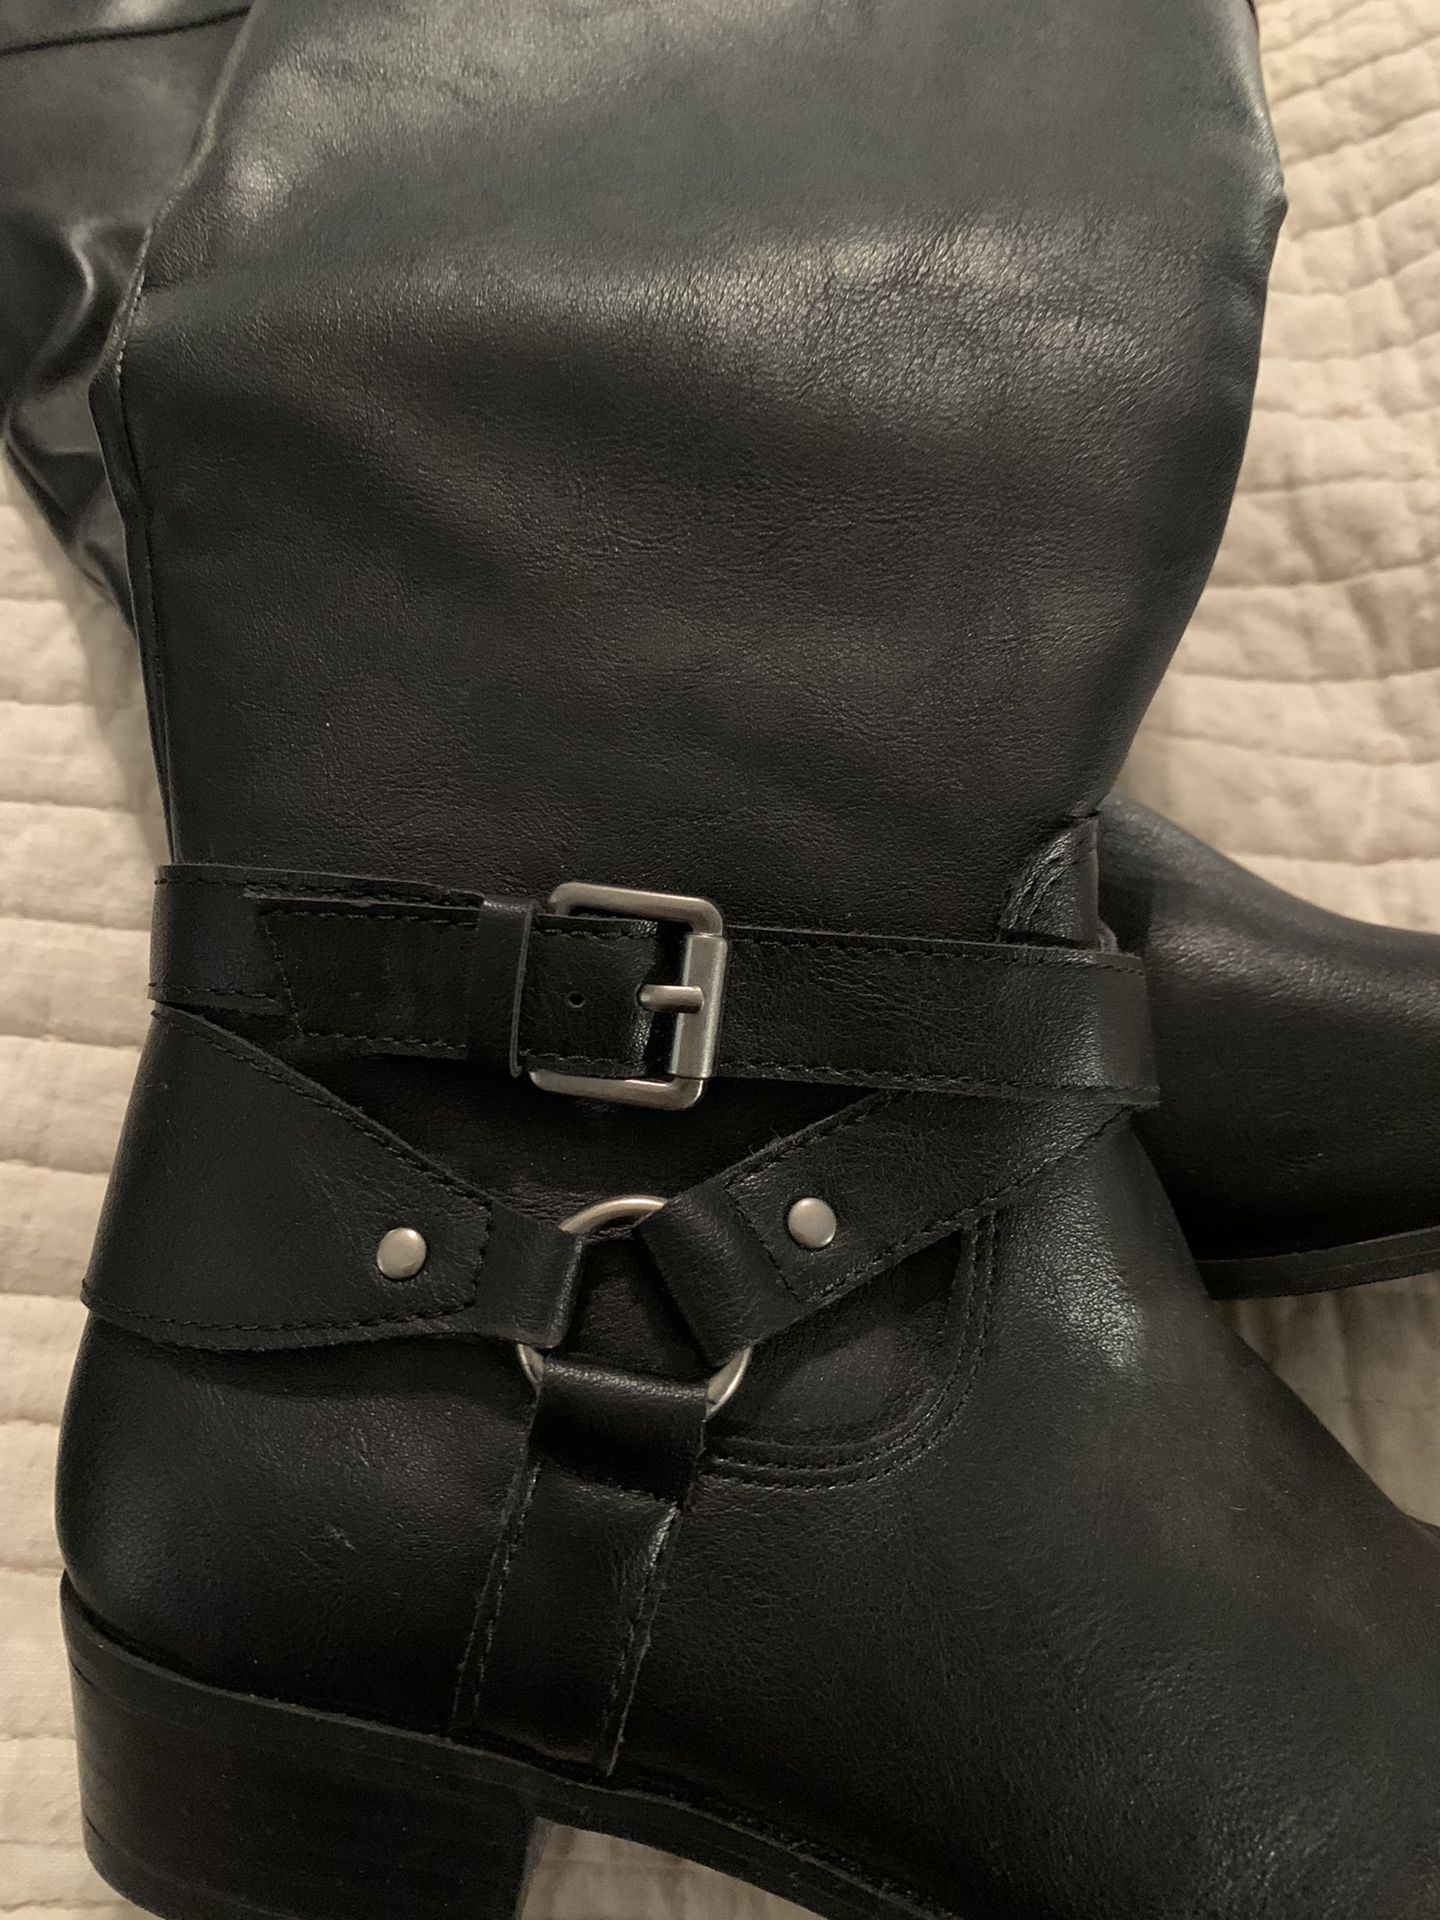 Black Boots-women’s Size 7